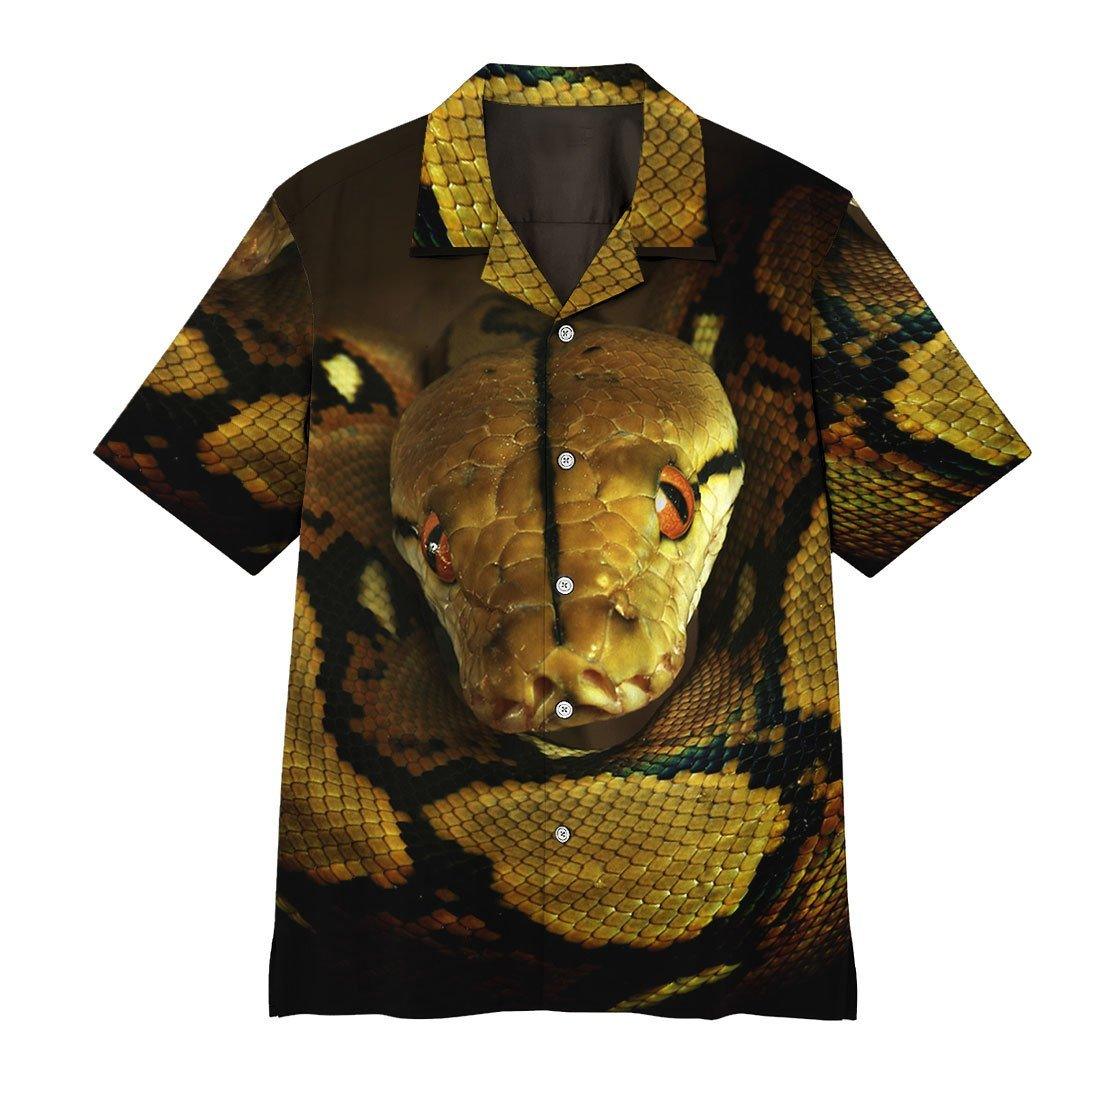 Ball Python Hawaii Shirt